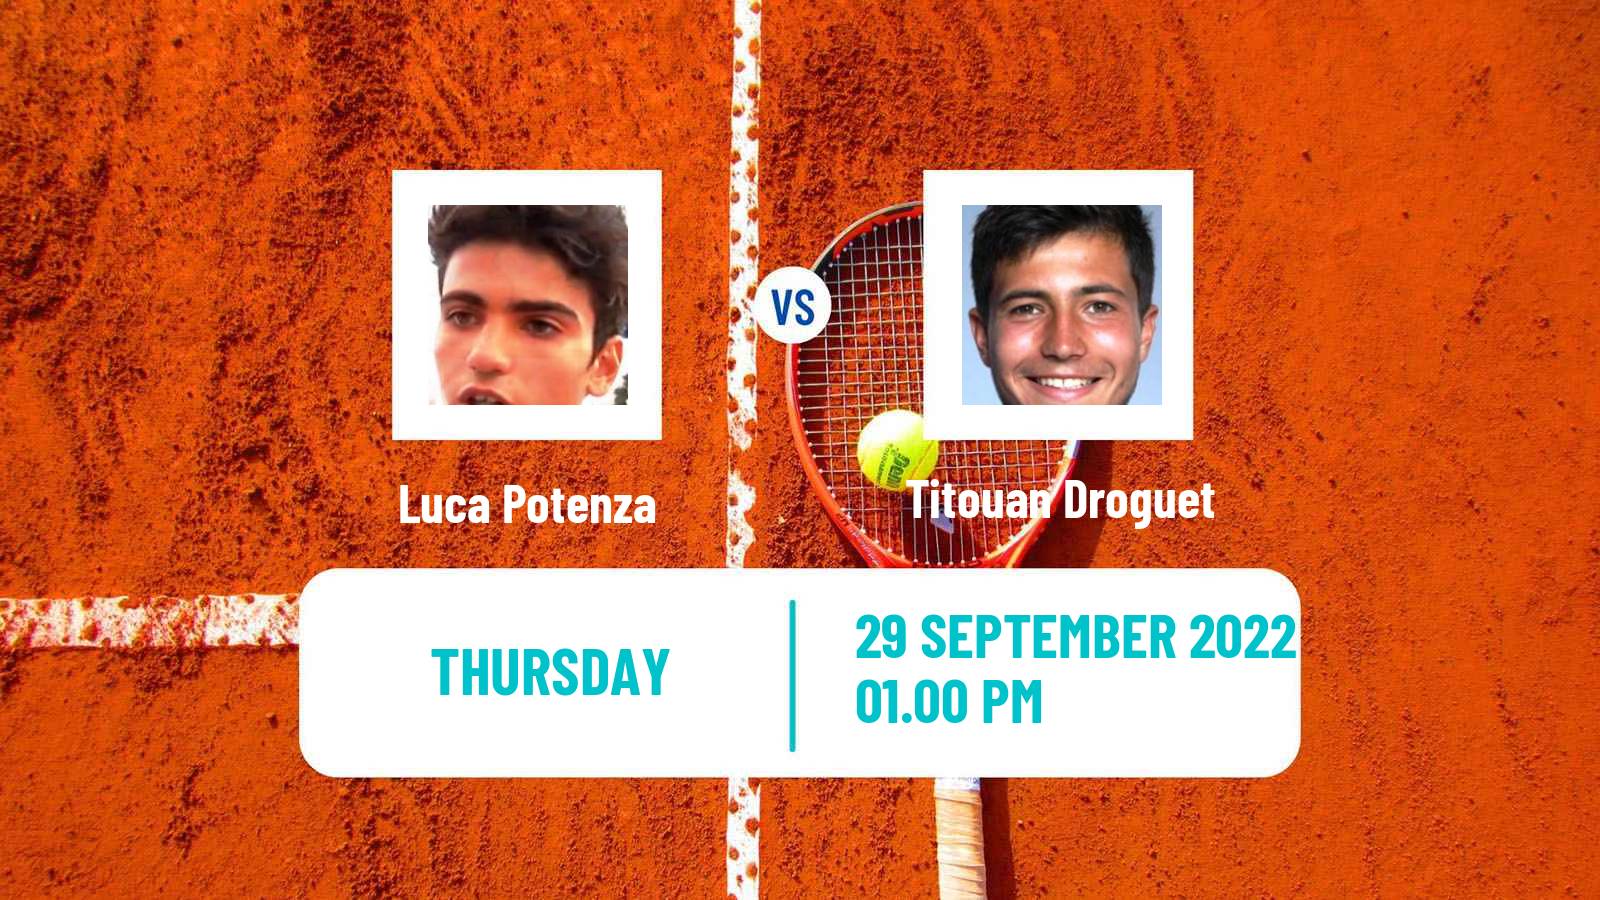 Tennis ITF Tournaments Luca Potenza - Titouan Droguet